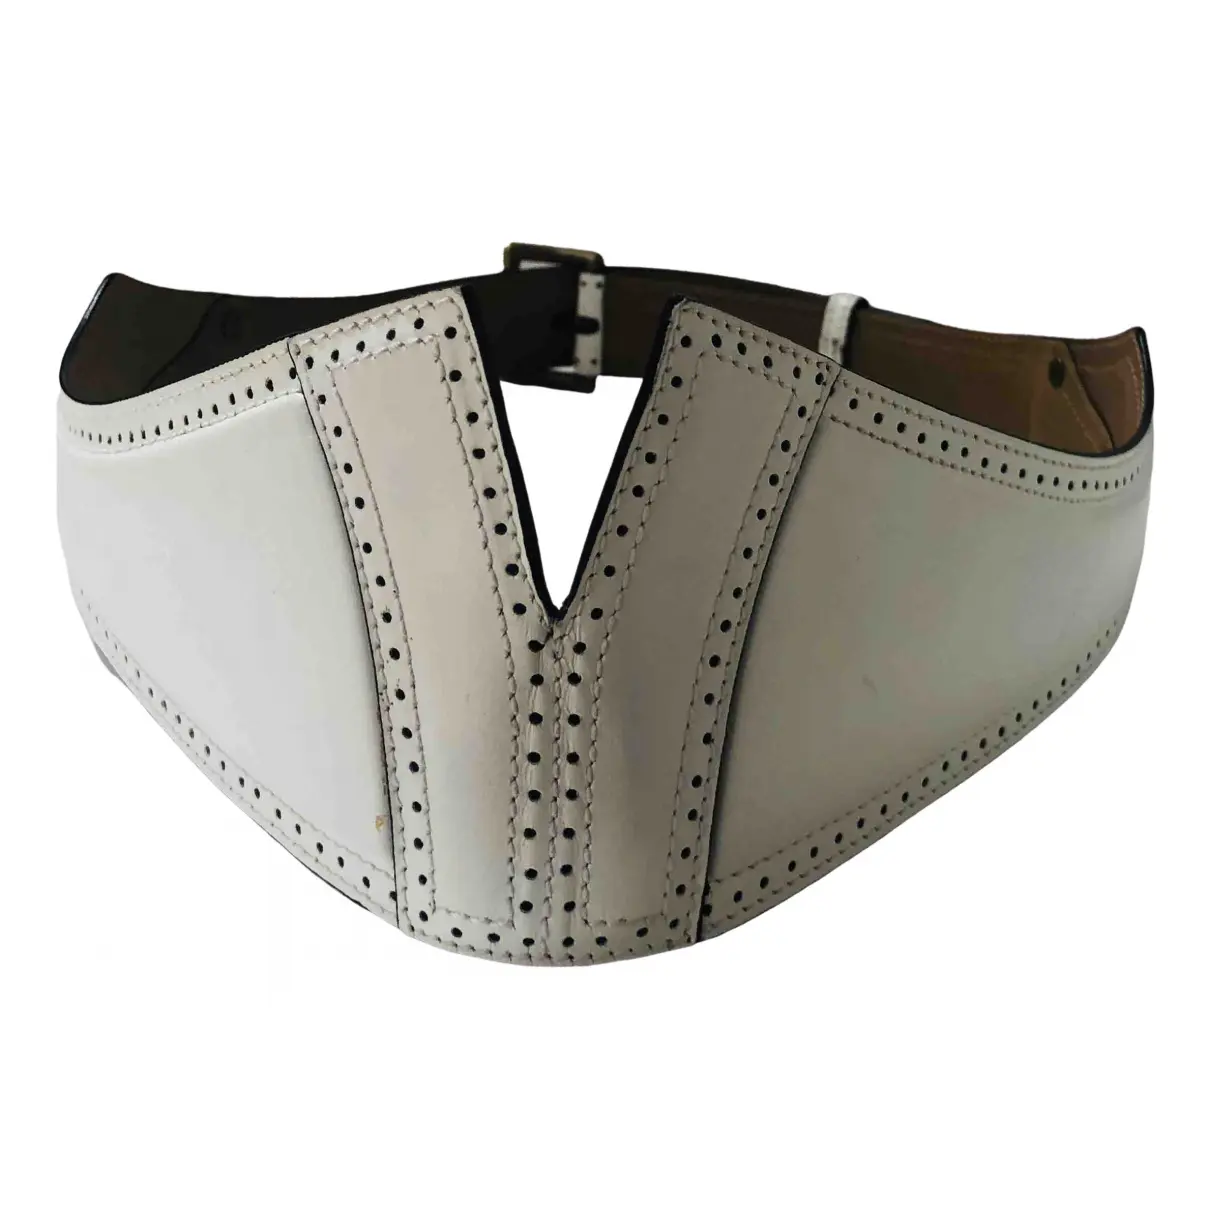 Leather belt Alaïa